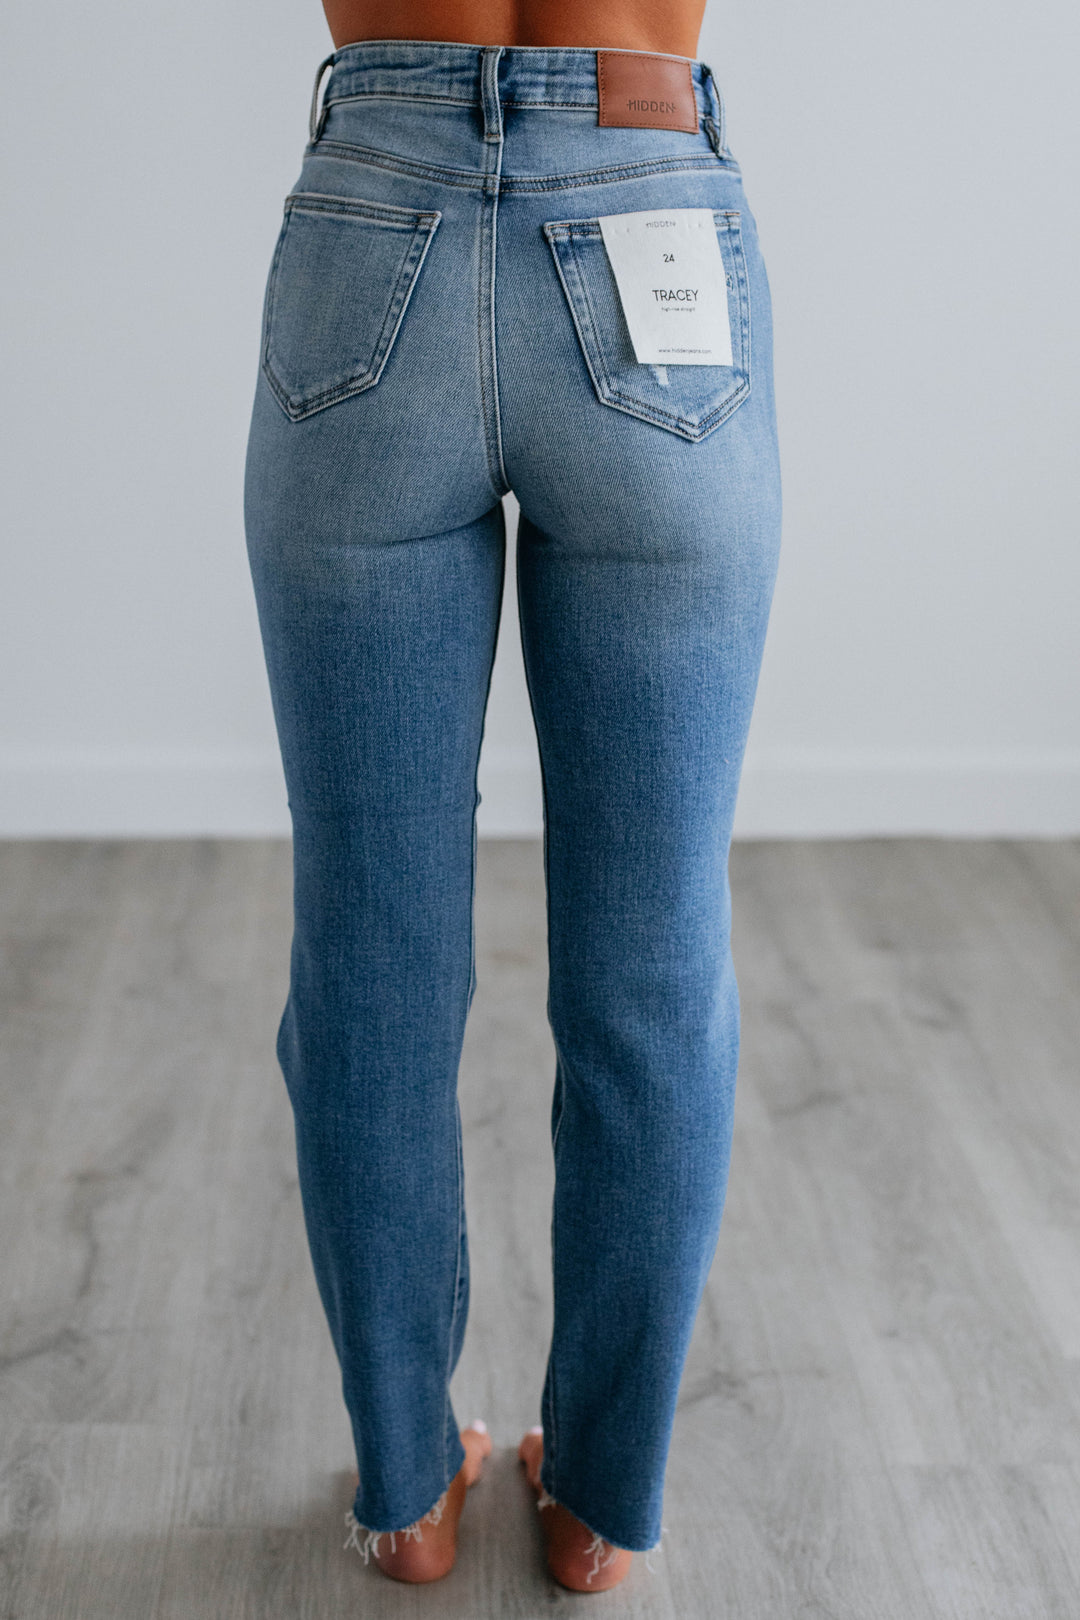 Tracey Hidden Jeans - Medium Wash